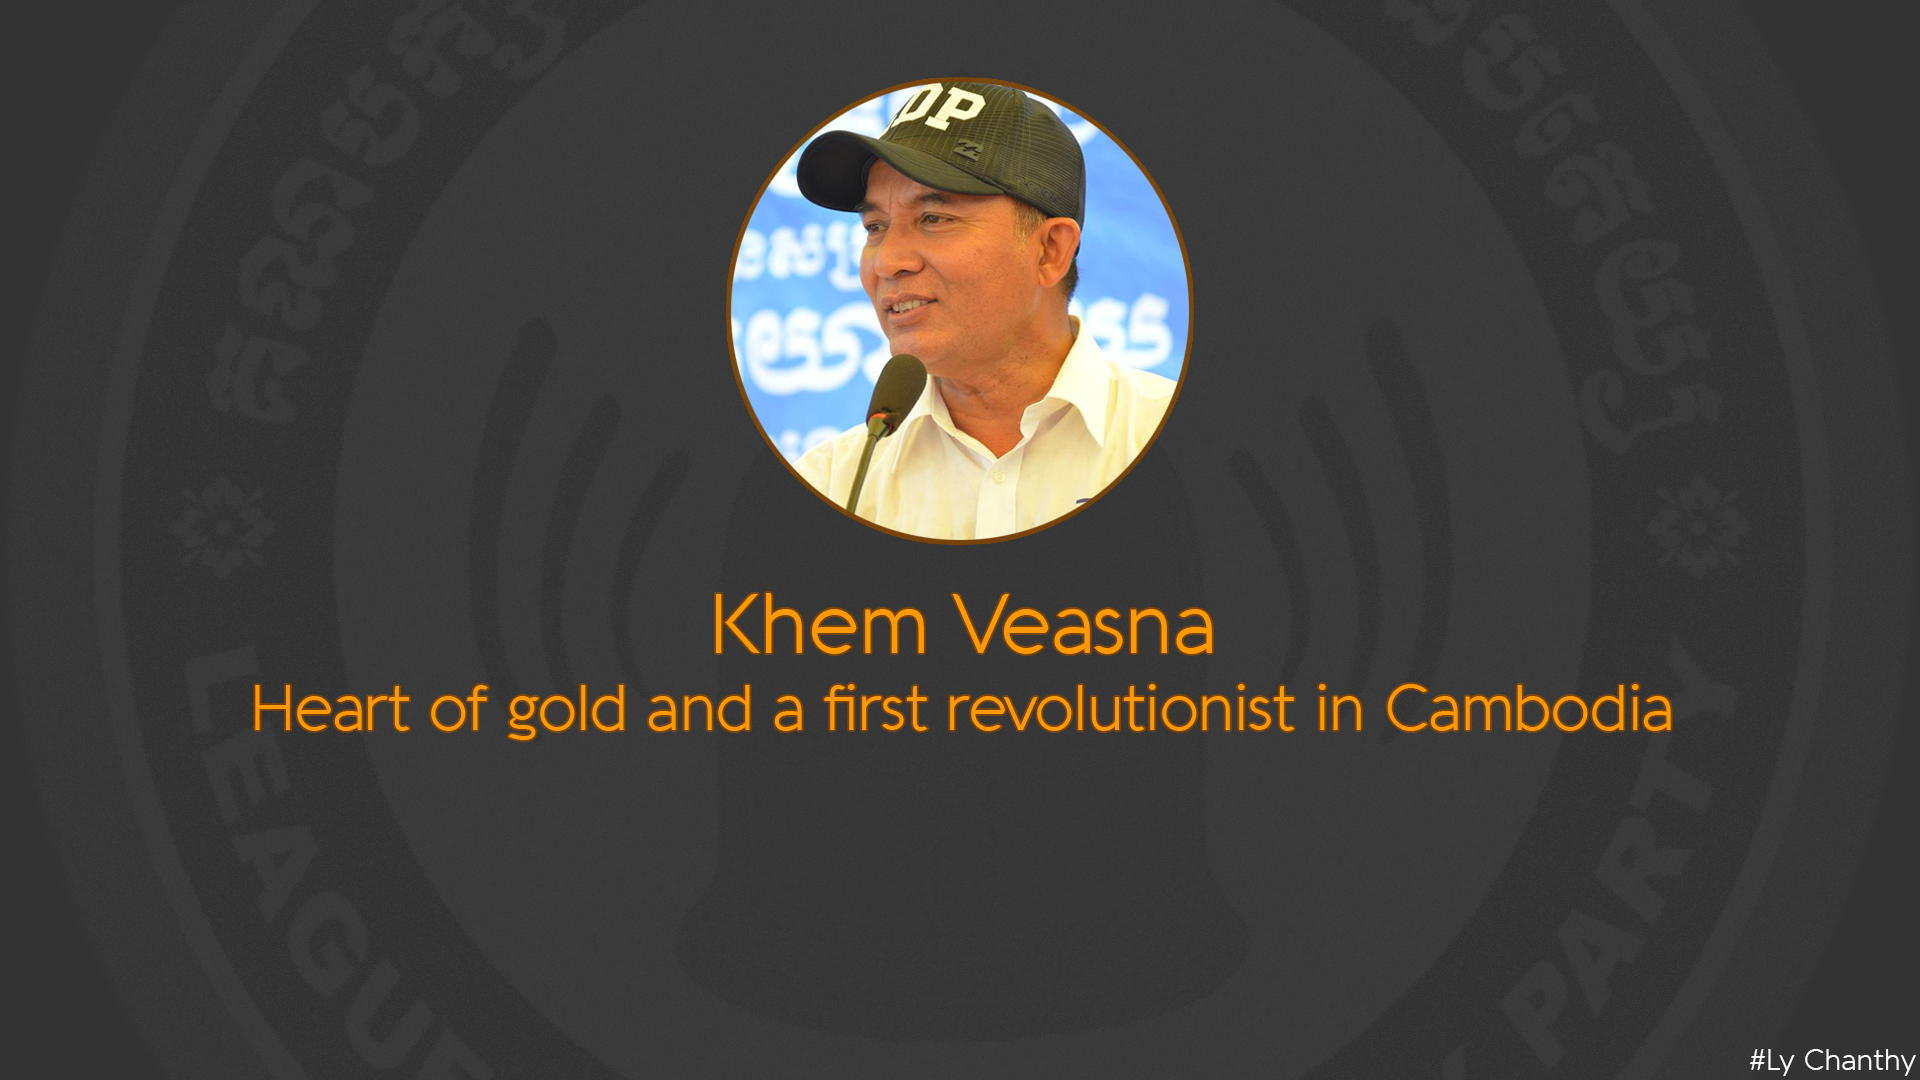 People 1920x1080 Khem Veasna political figure Cambodia